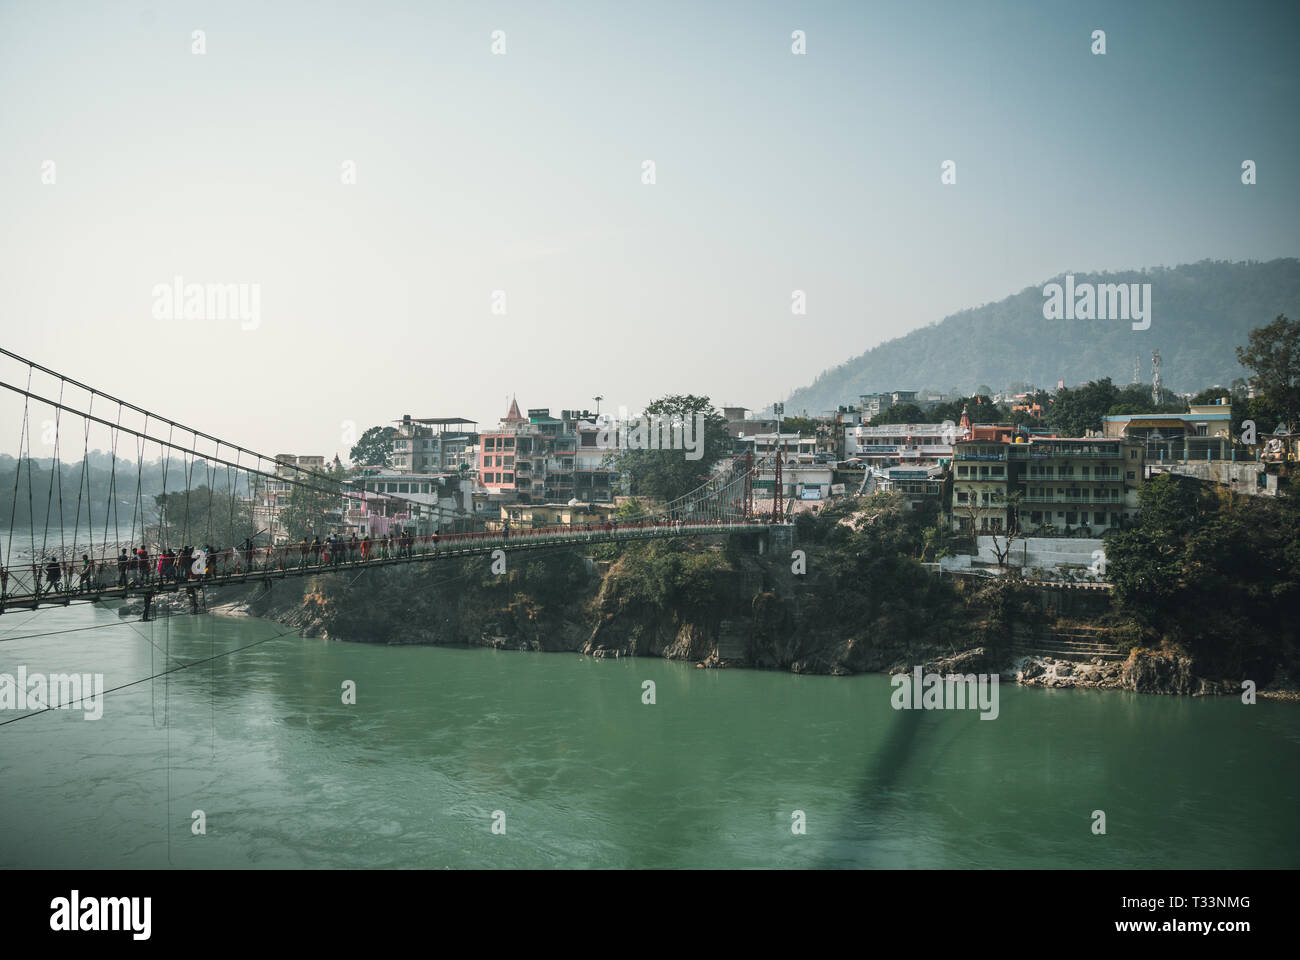 Lakshman Jhula est un pont suspendu en fer situé à Rishikesh, l'état de Uttarakhand en Inde. Banque D'Images